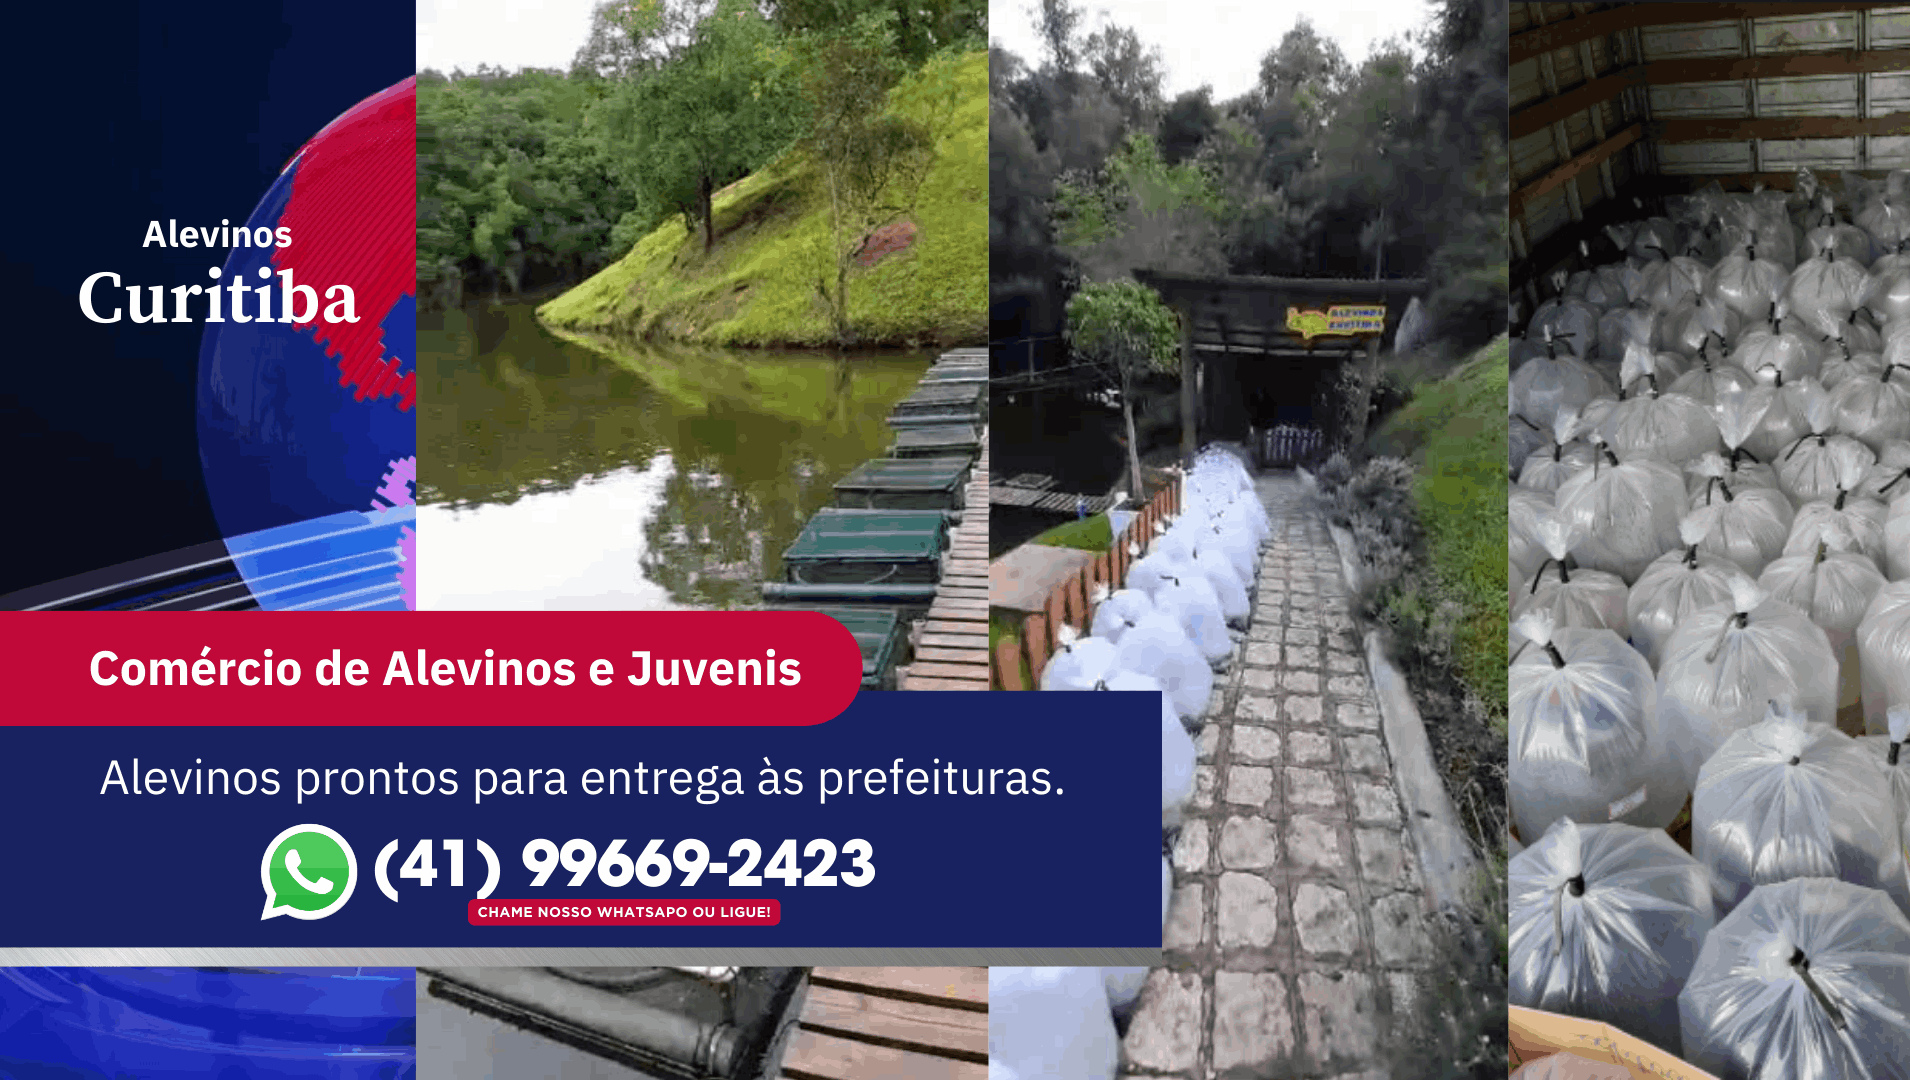 A Alevinos Curitiba está comprometida com o desenvolvimento da piscicultura e com o fornecimento de alevinos de alta qualidade.